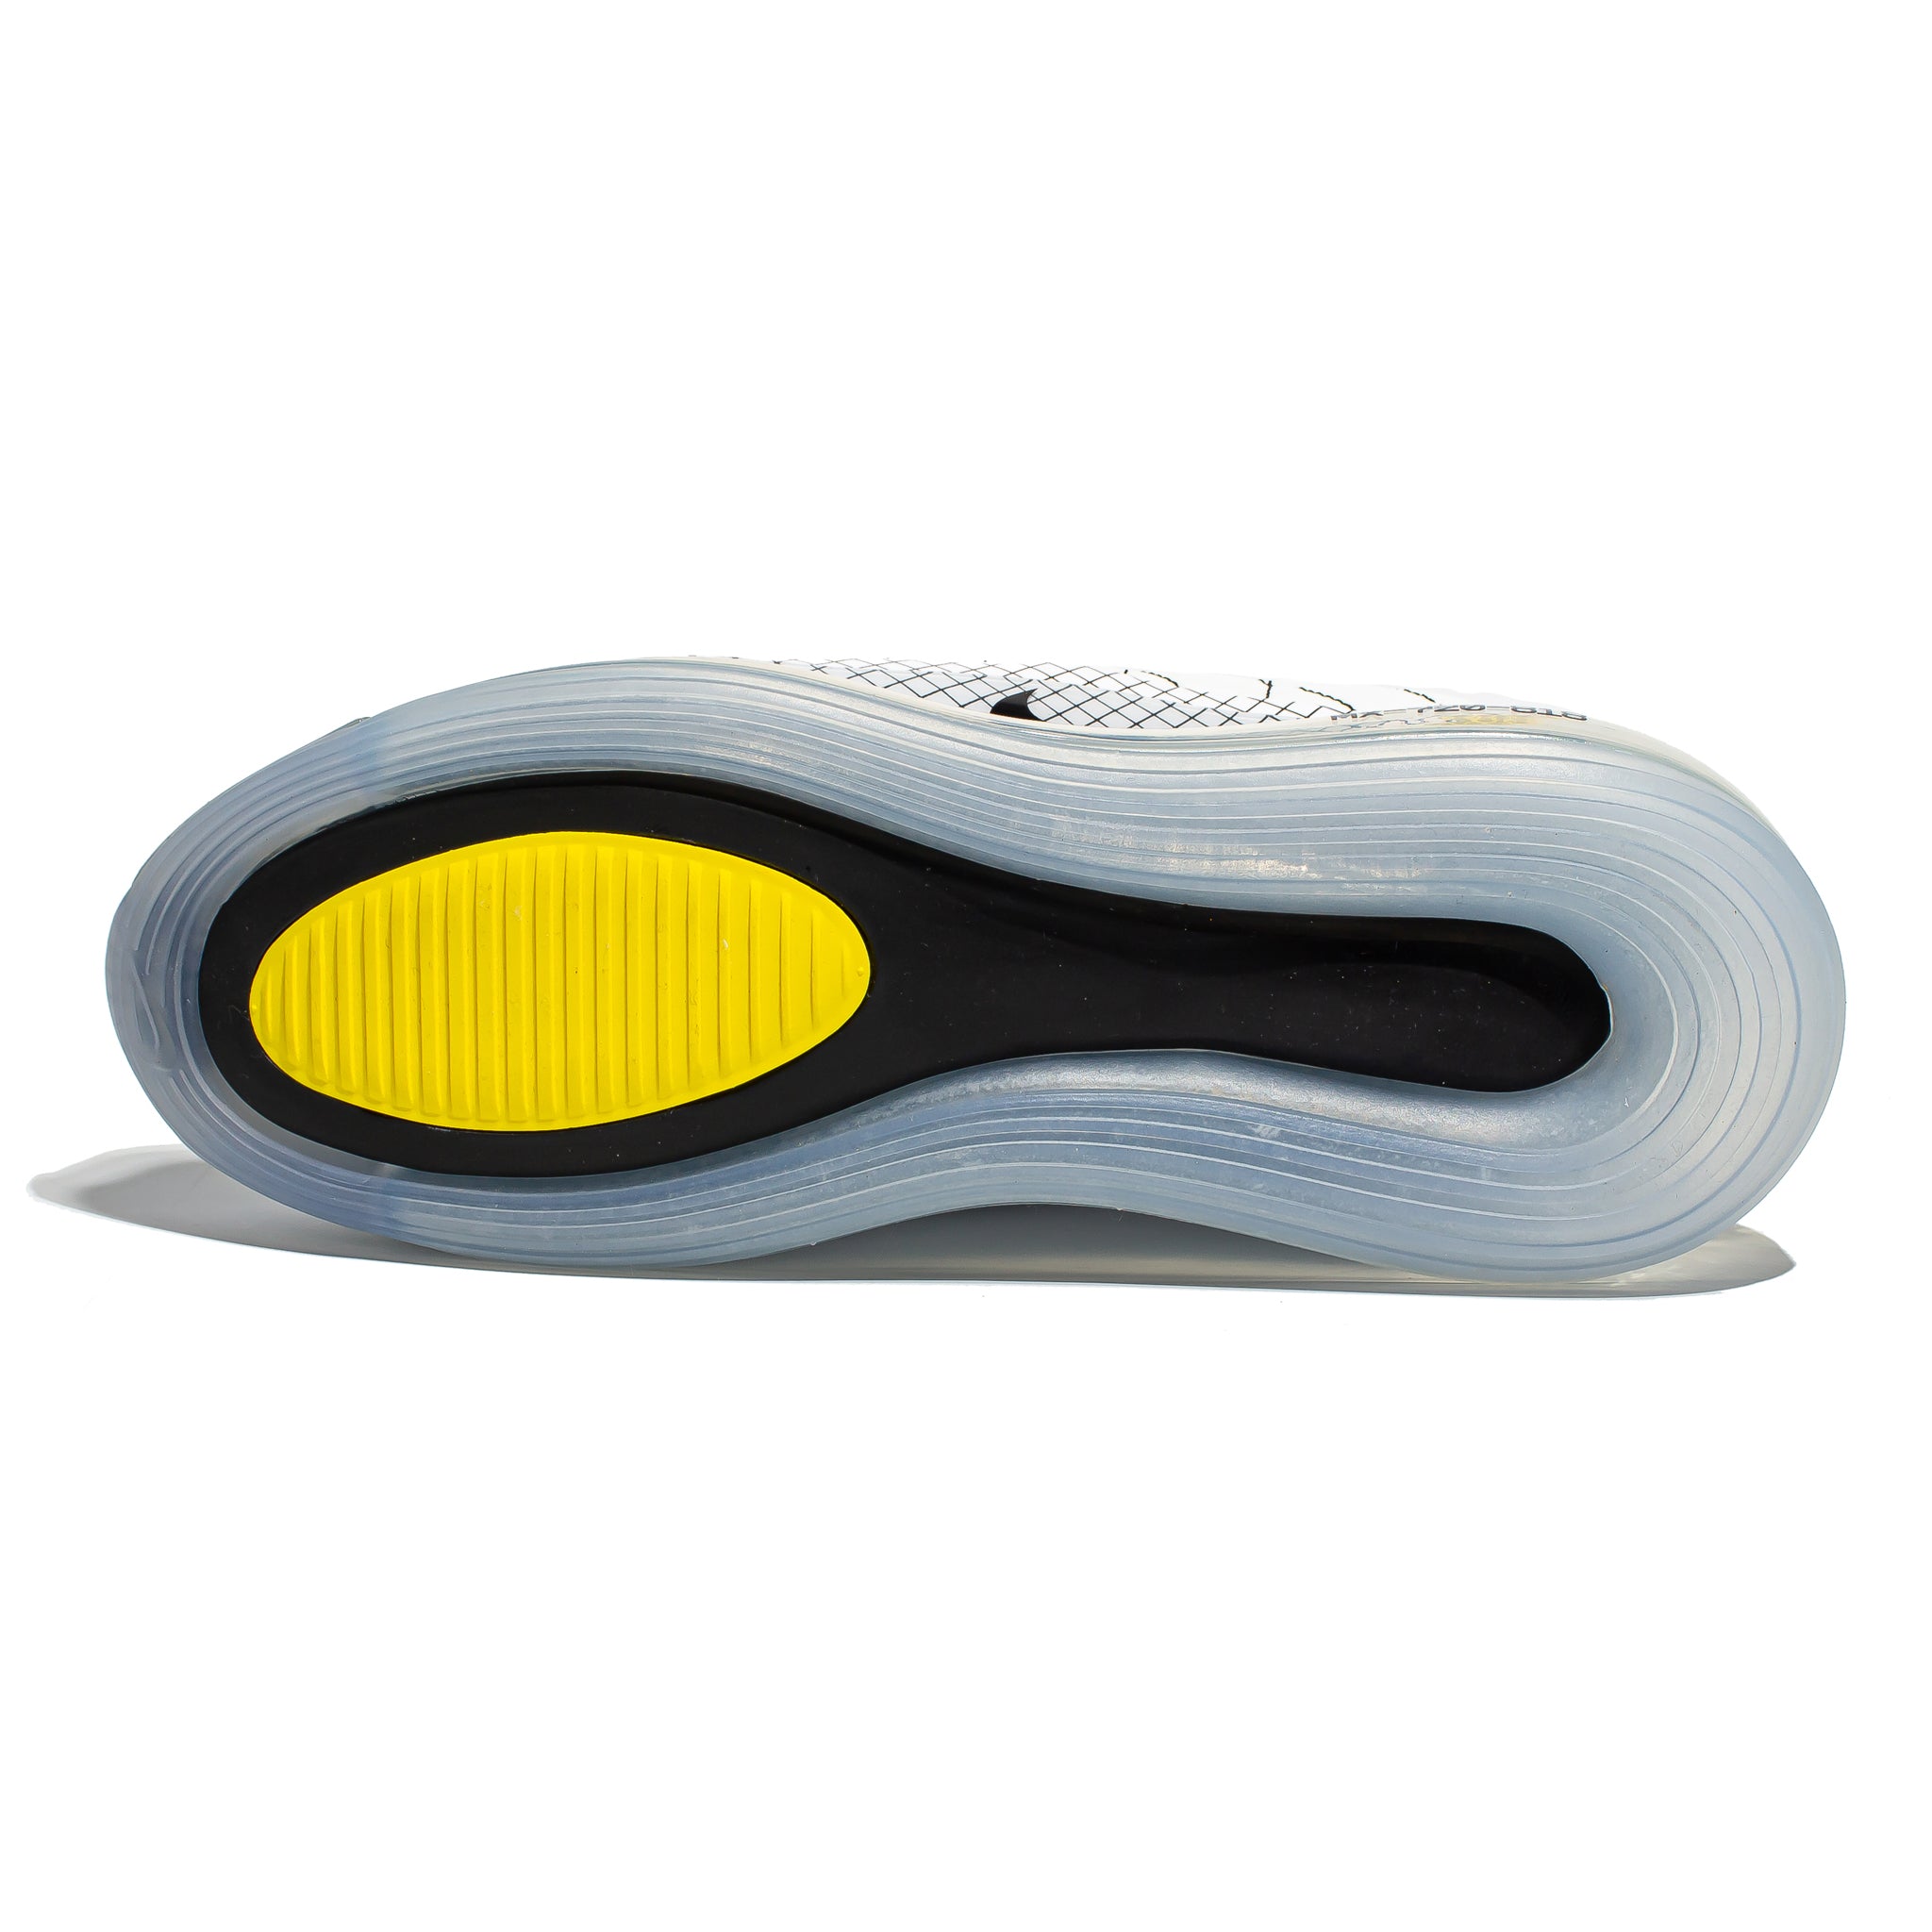 Nike Air MX 720-818 Yellow CI3871-100